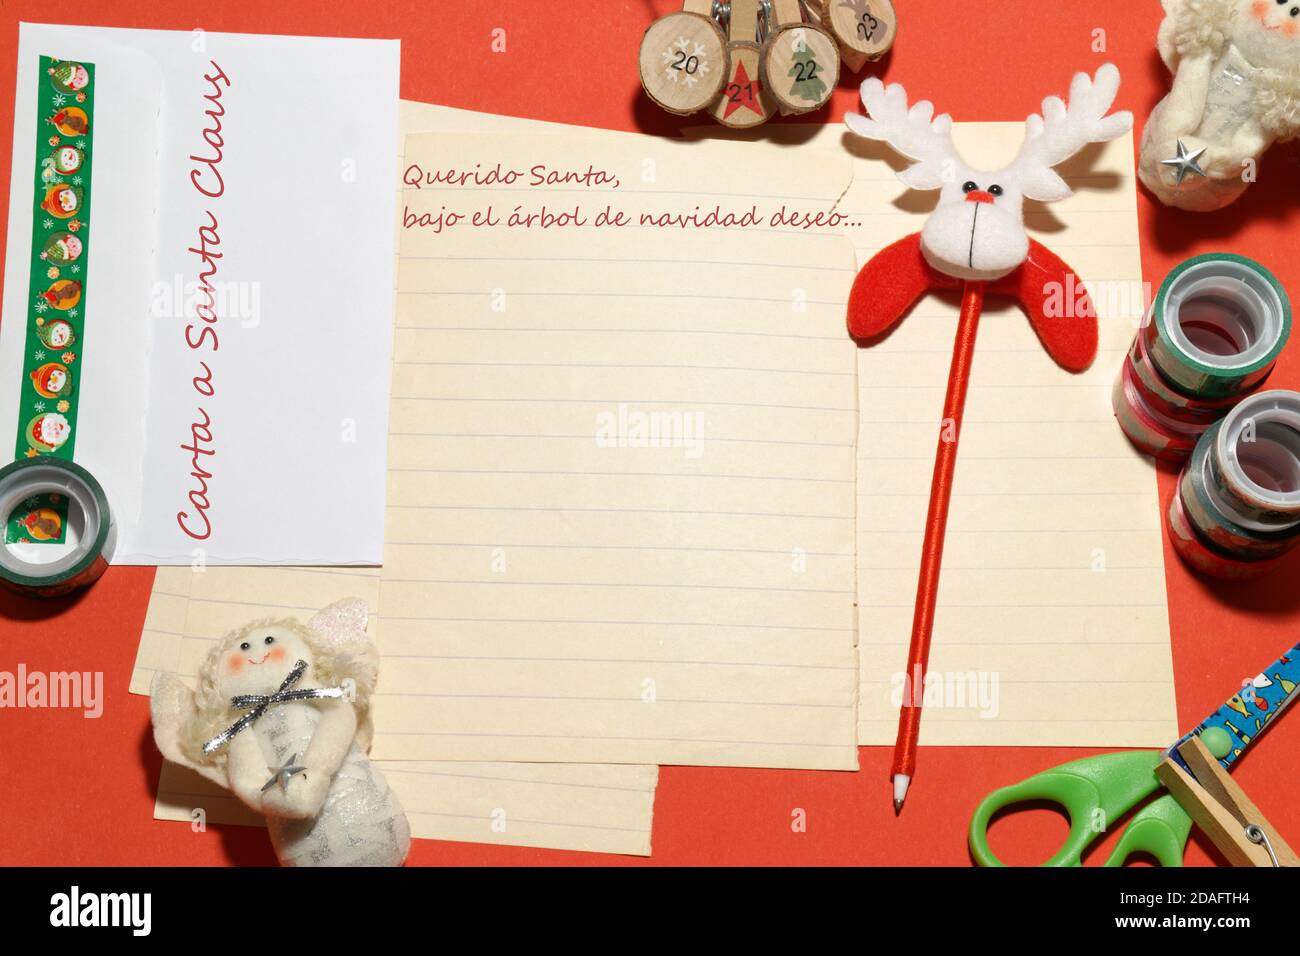 Lettre, carte de vœux au Père Noël en espagnol. Traduction du texte espagnol : lettre au Père Noël. Cher Père Noël, sous l'arbre de Noël, je souhaite... Banque D'Images